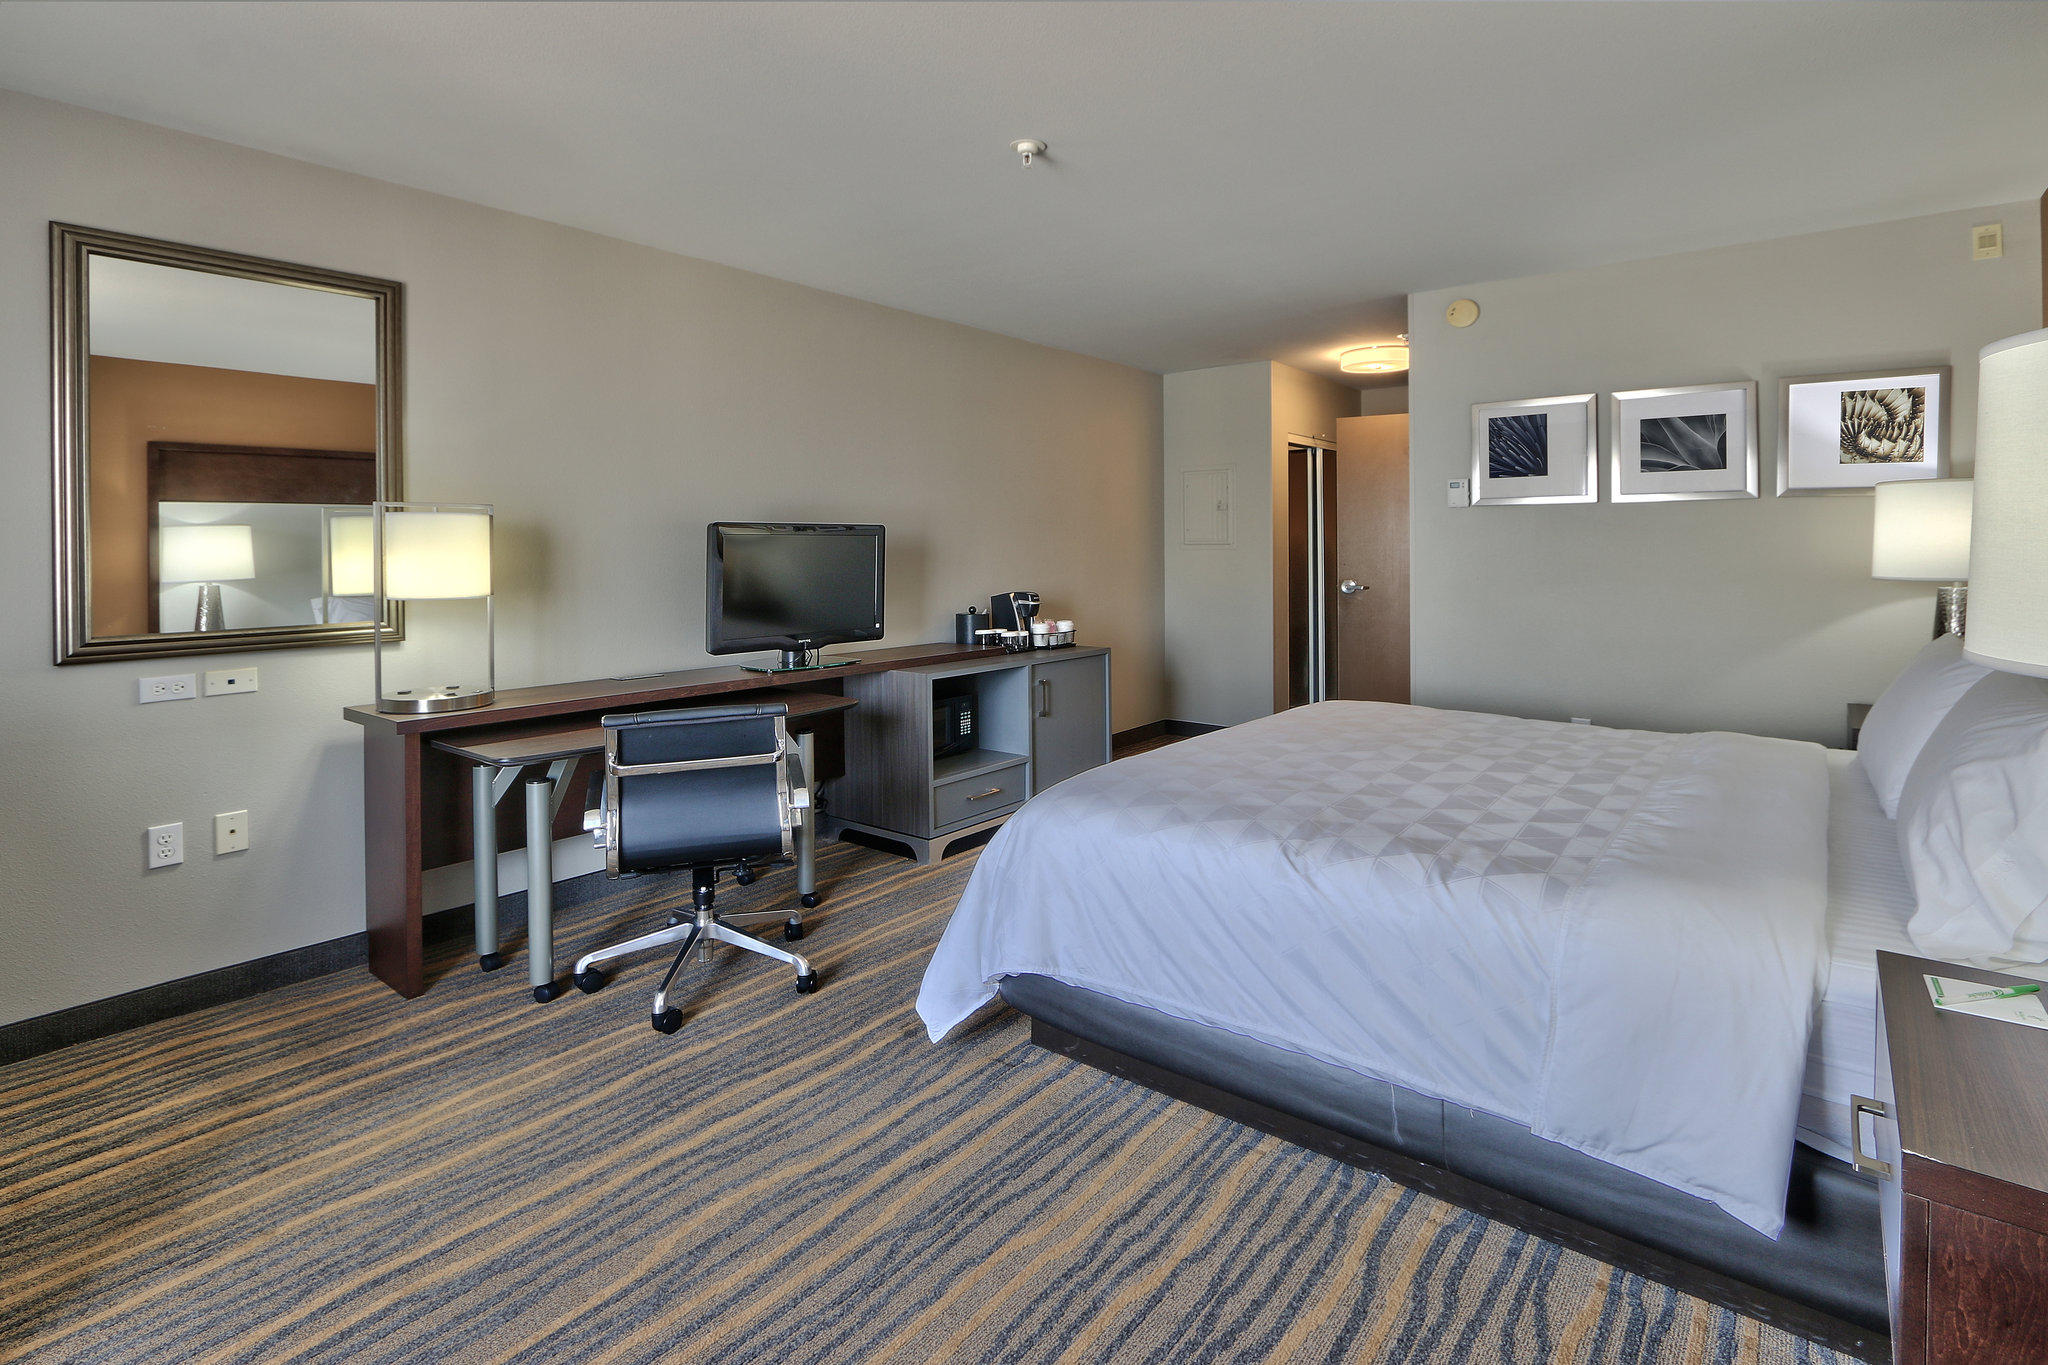 Holiday Inn & Suites Albuquerque-North I-25 Photo